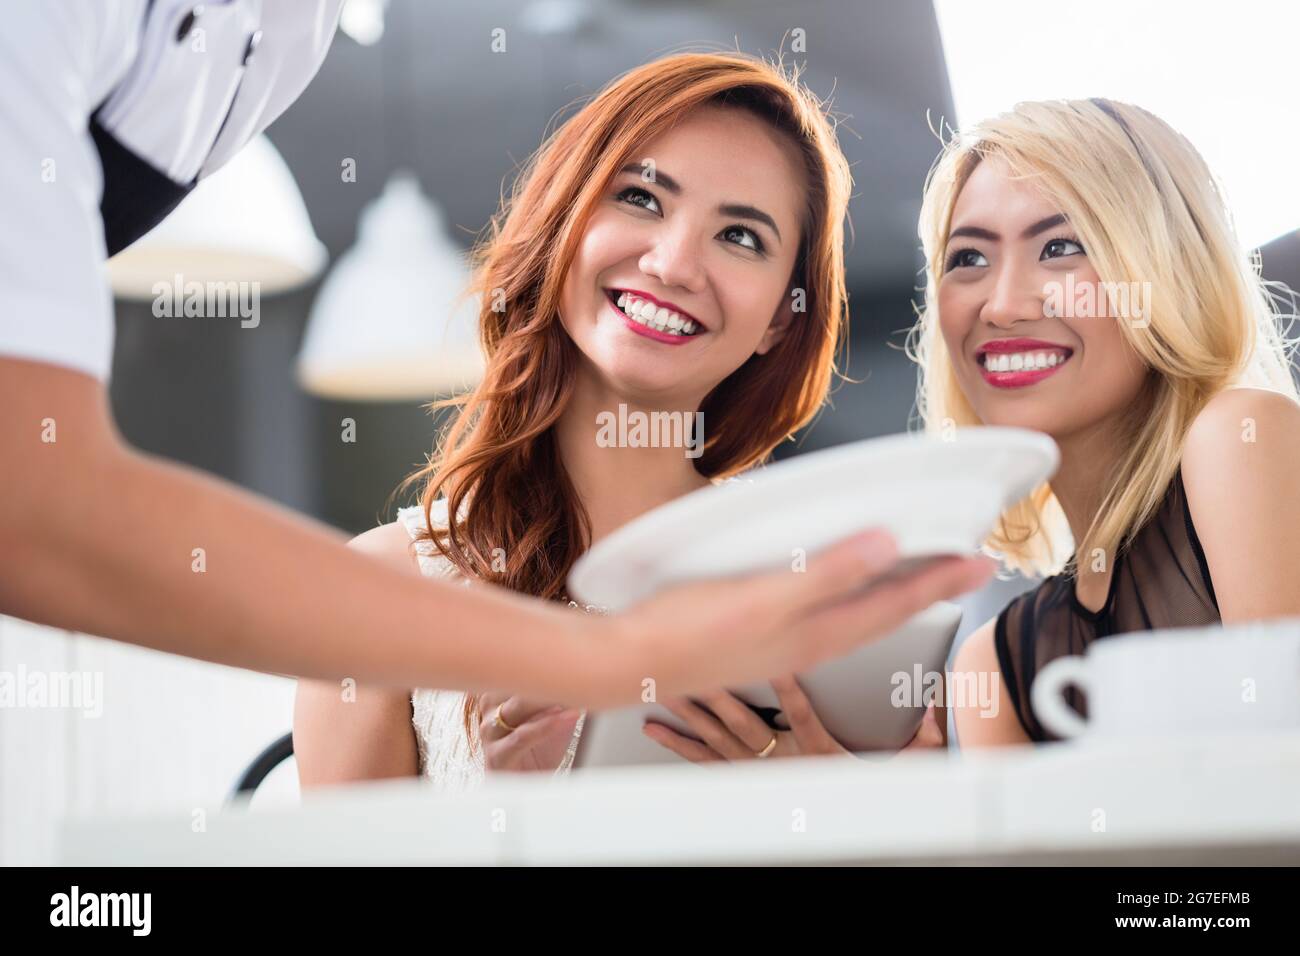 Zwei lächelnde, attraktive asiatische Frau, die in einem Restaurant mit einem Teller Essen serviert wird, aus dem Winkel an den Kellnern vorbei, mit Fokus auf ihre Gesichter Stockfoto